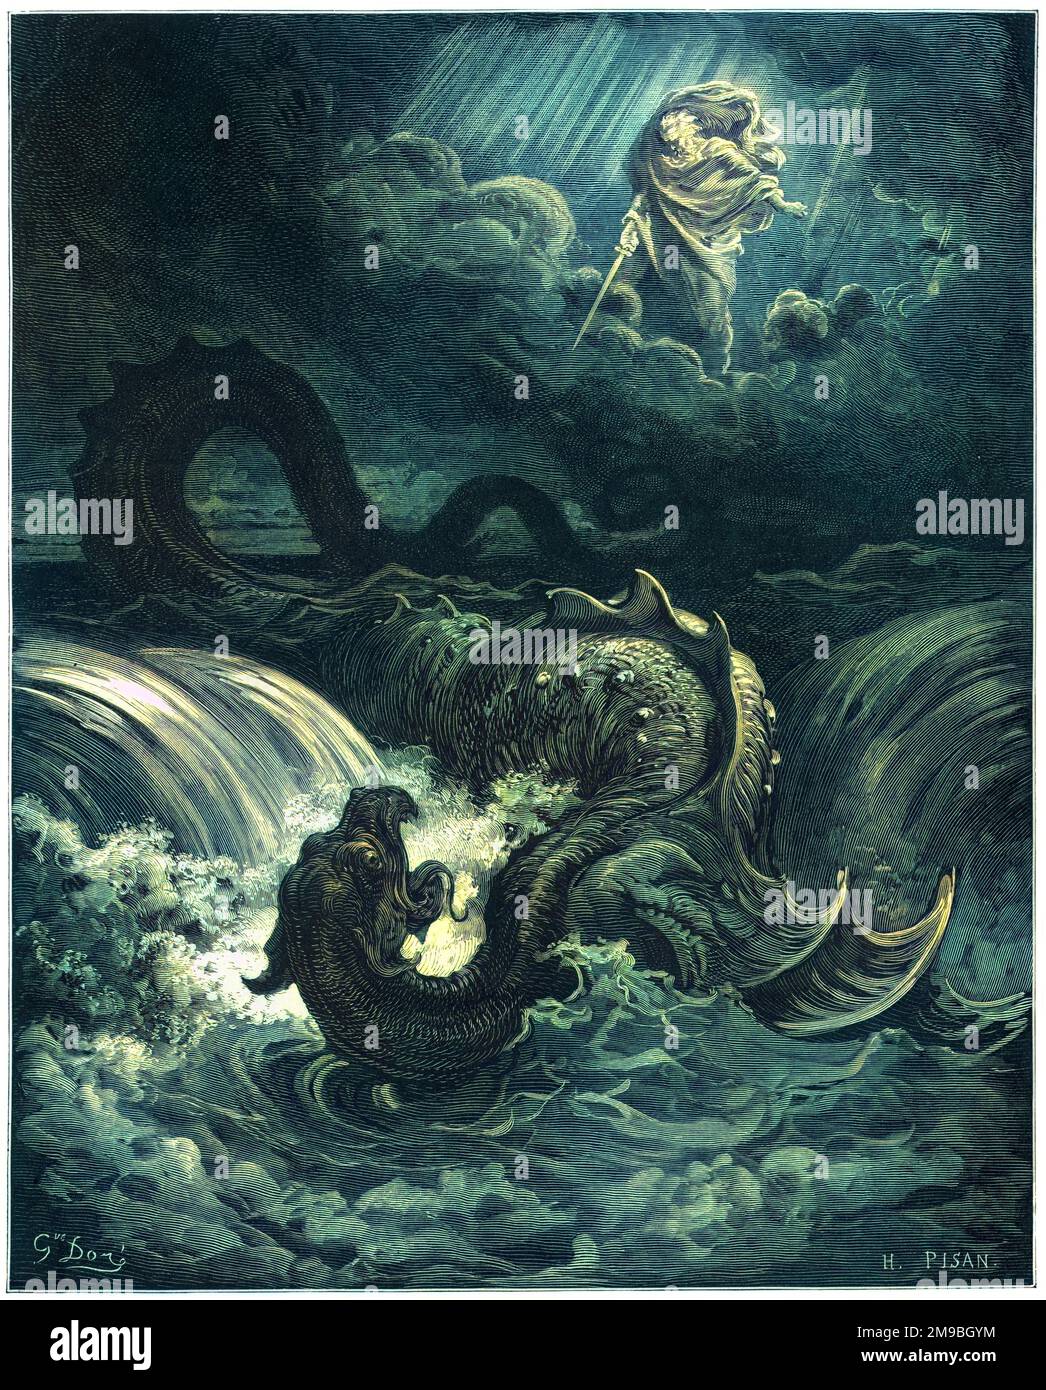 L'interpretazione di Dore del combattimento tra Dio e il drago marittimo Leviathan che avrà luogo negli ultimi tempi, come descritto da Isaia Foto Stock